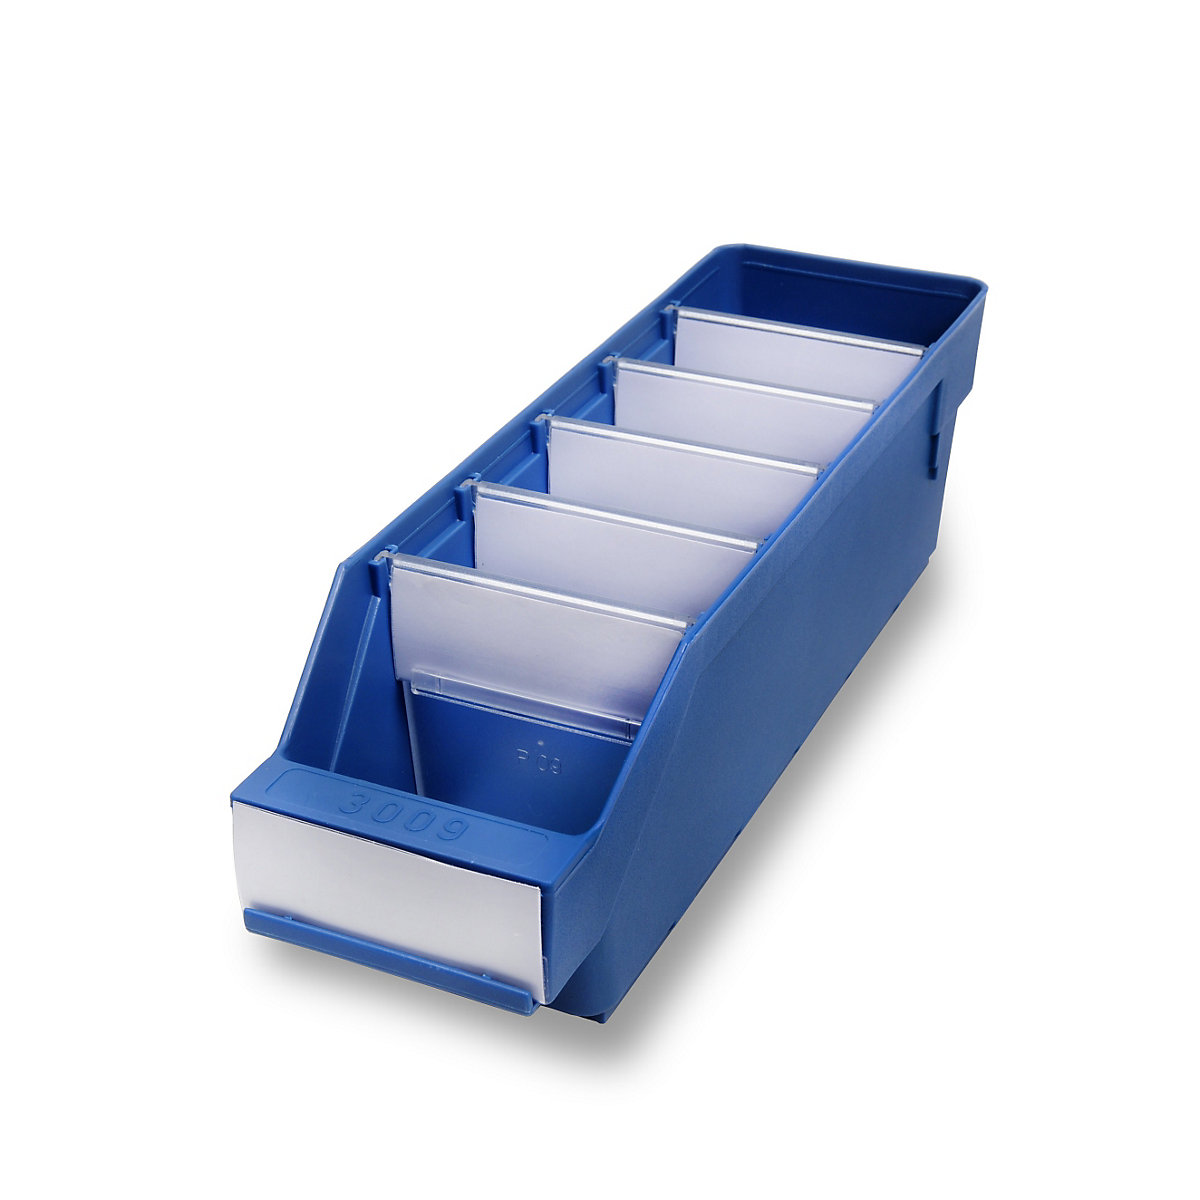 STEMO Regalkasten aus hochschlagfestem Polypropylen, blau, LxBxH 300 x 90 x 95 mm, VE 40 Stk